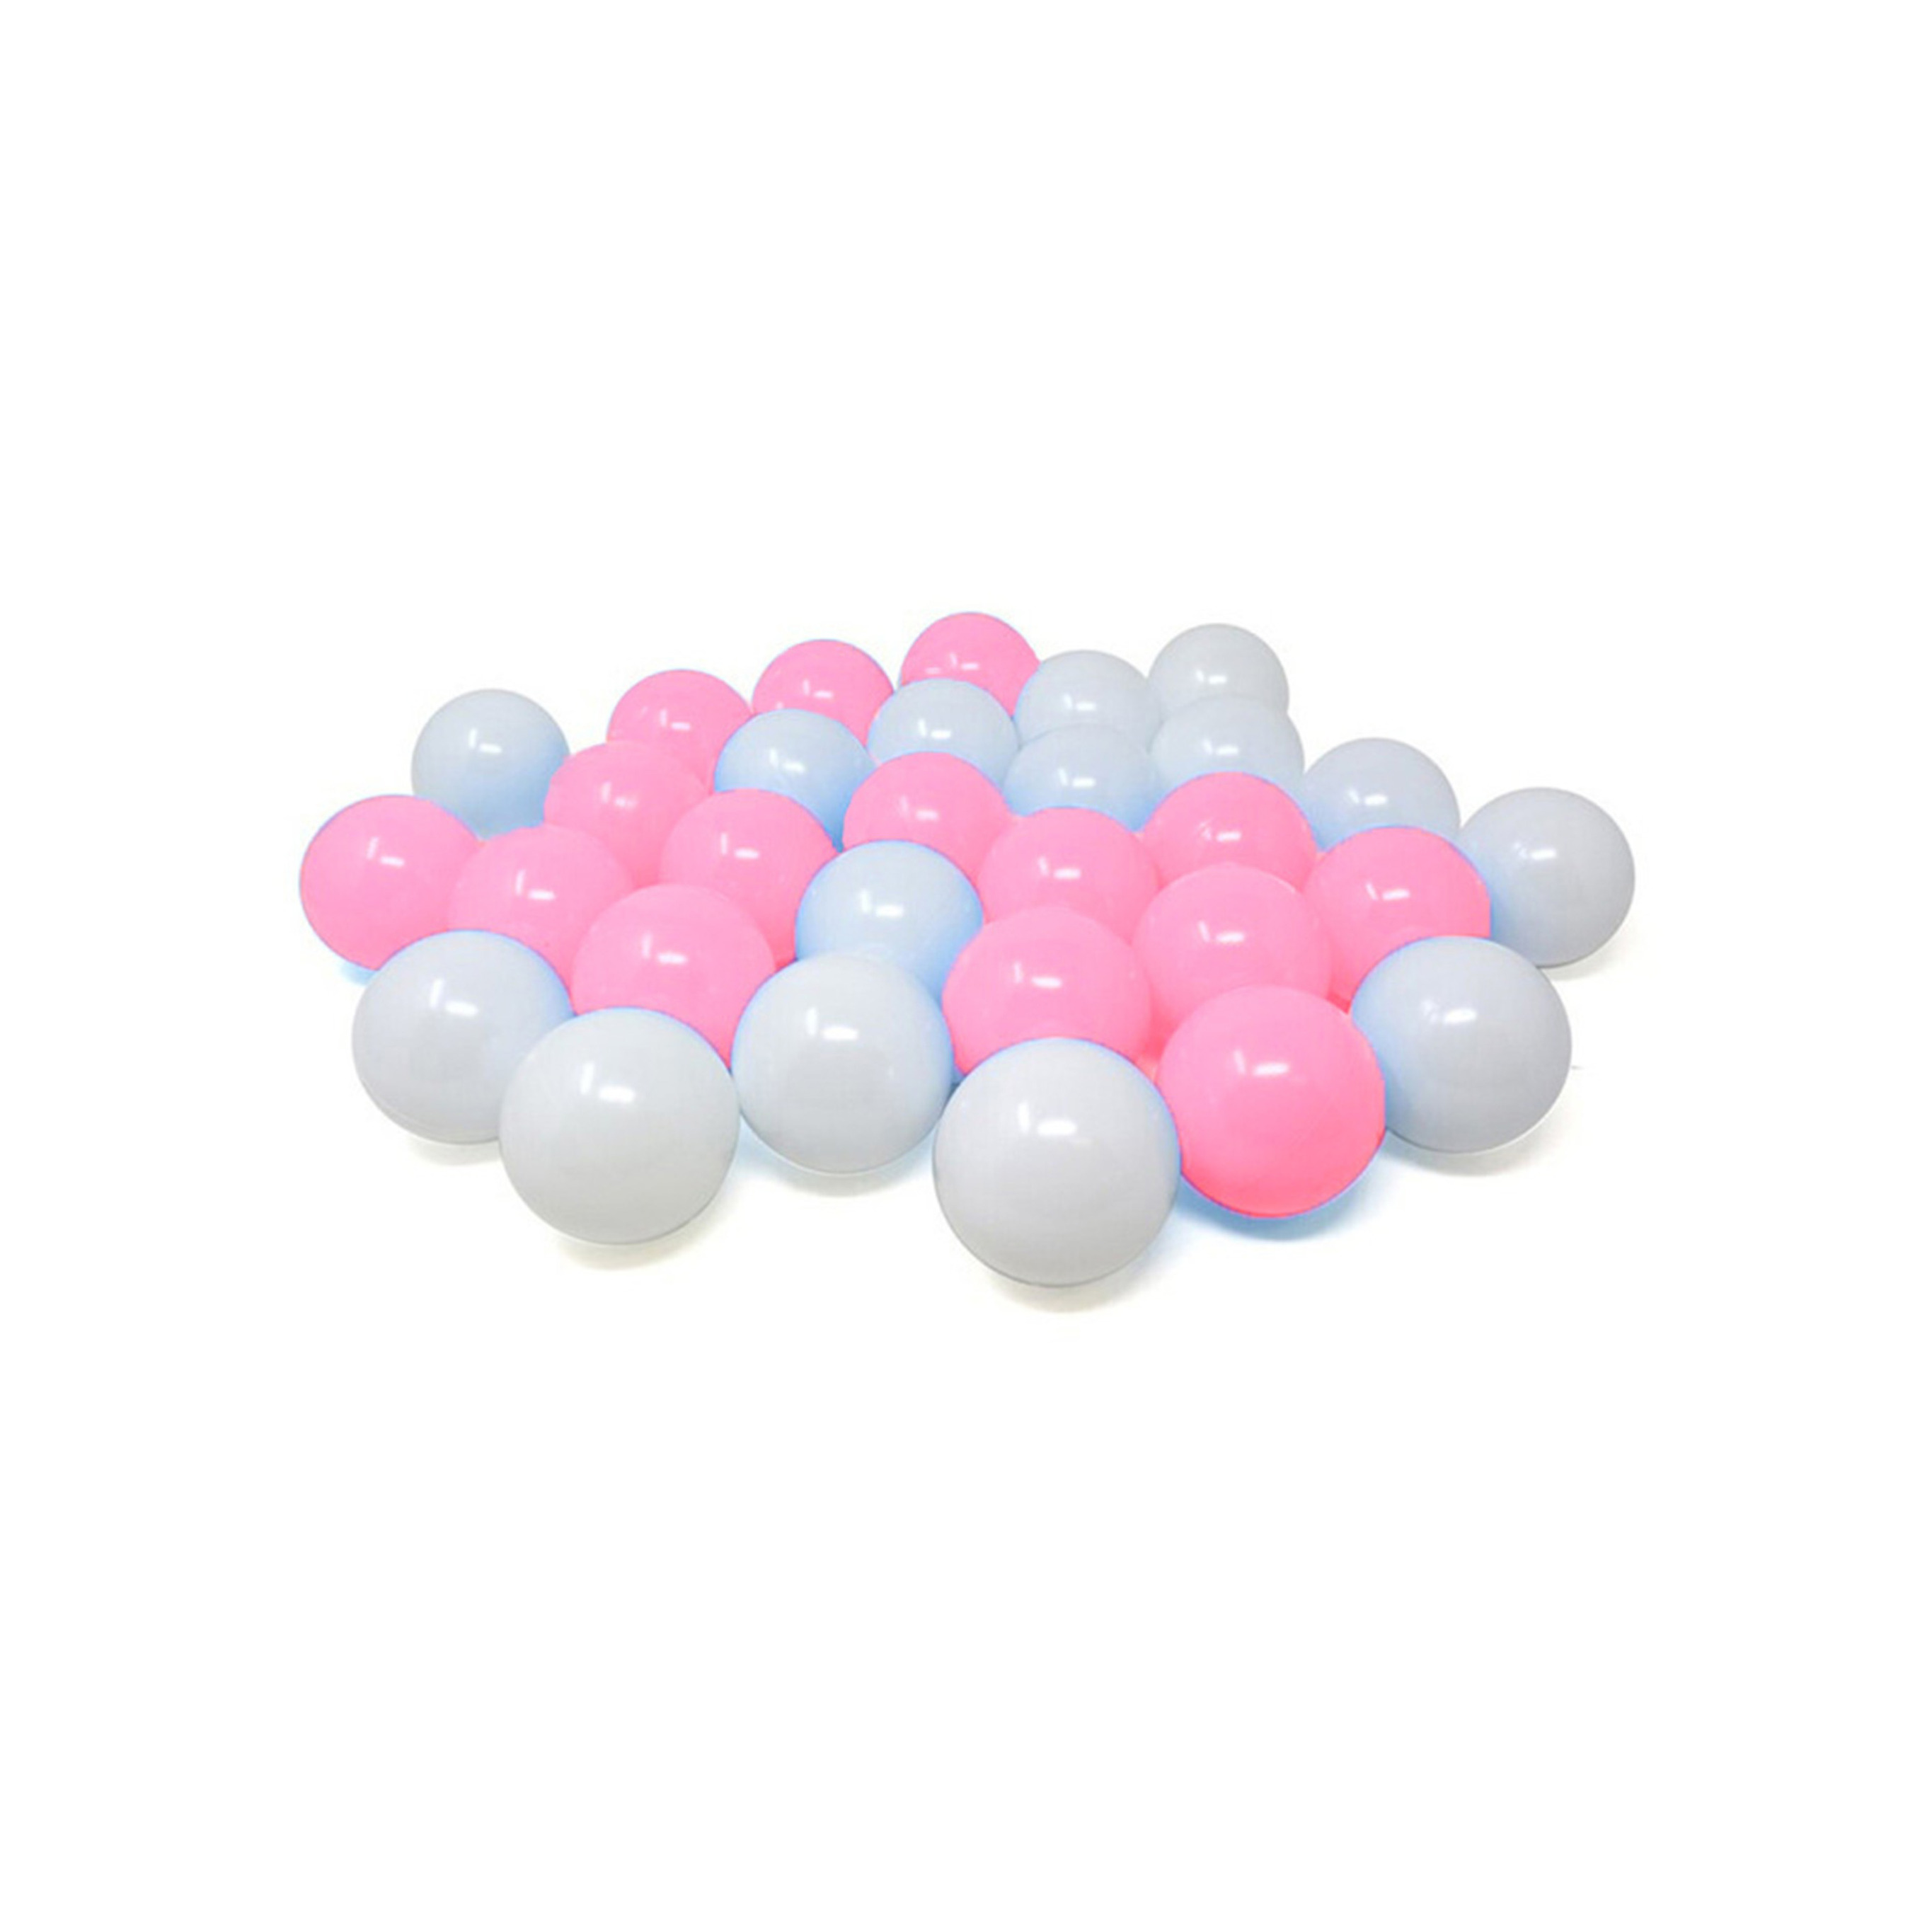 Kunststof ballenbak ballen - roze/wit - 60x stuks - ca 6 cm -